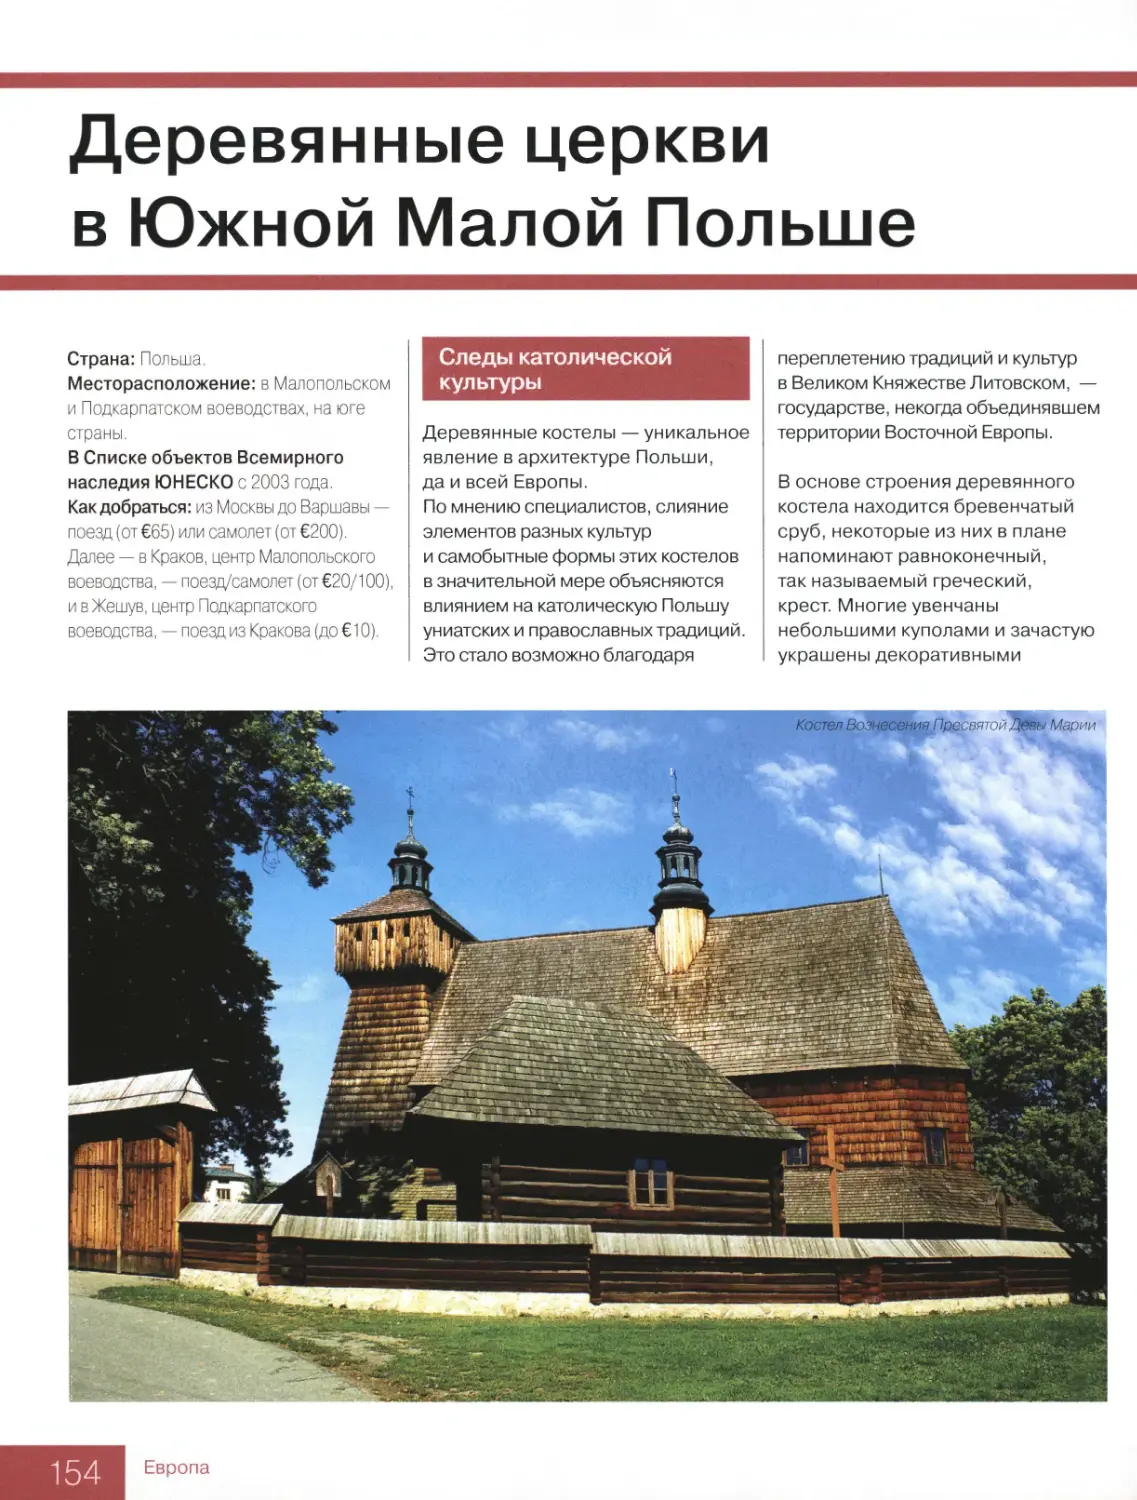 Деревянные церкви в Южной Малой Польше